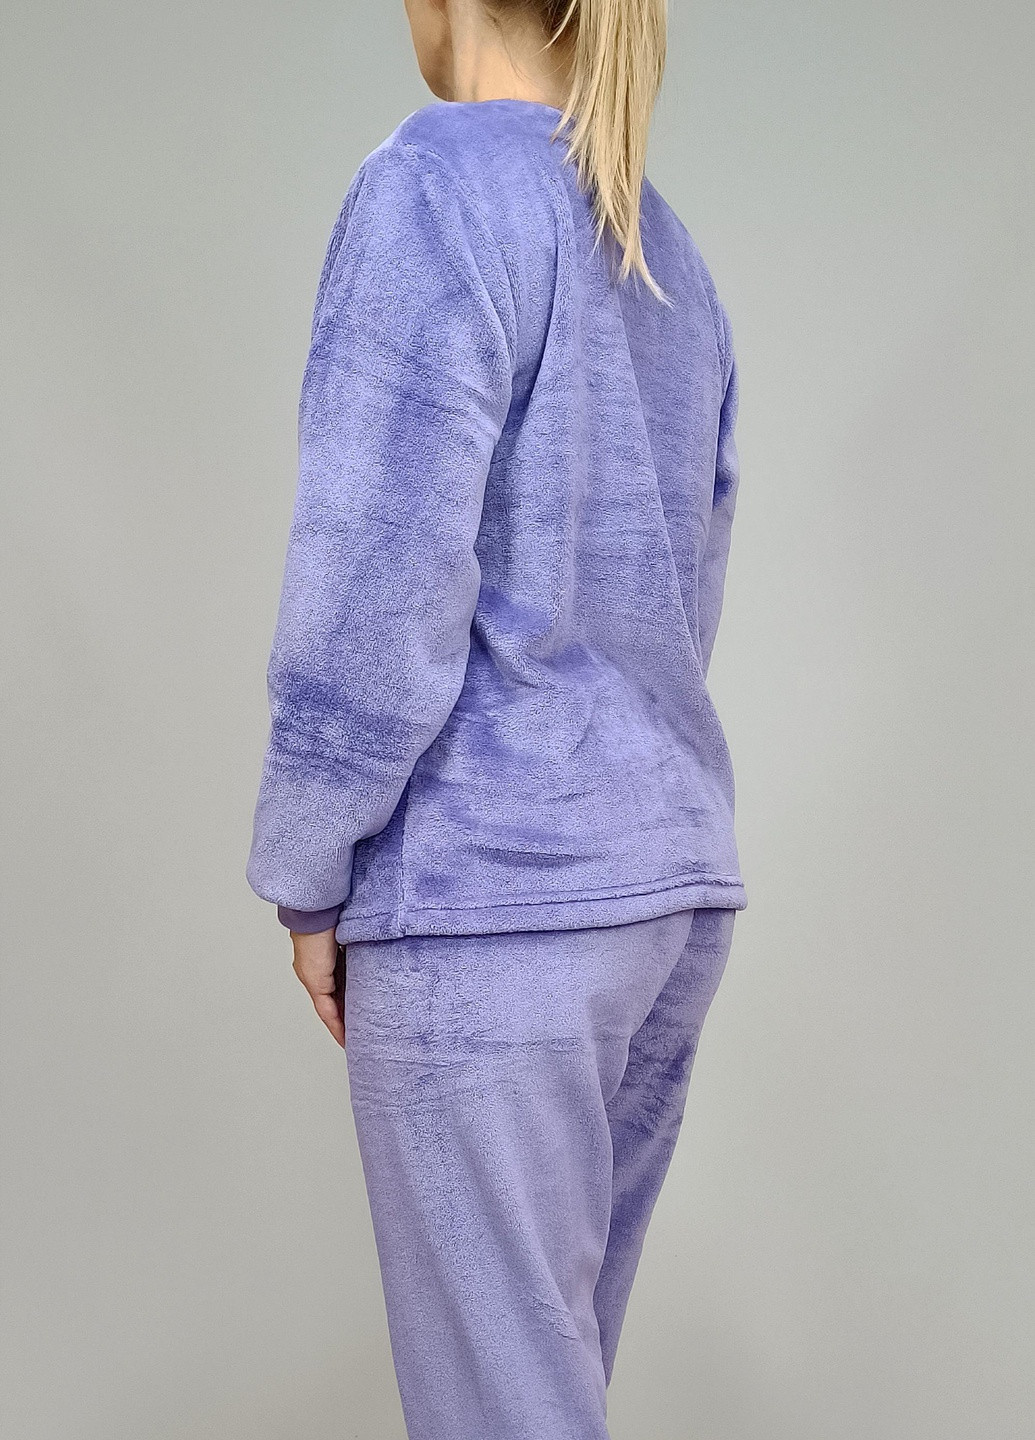 Сиреневая пижама женская violeta теплая 54 сиреневая triko (55162055-6) No Brand